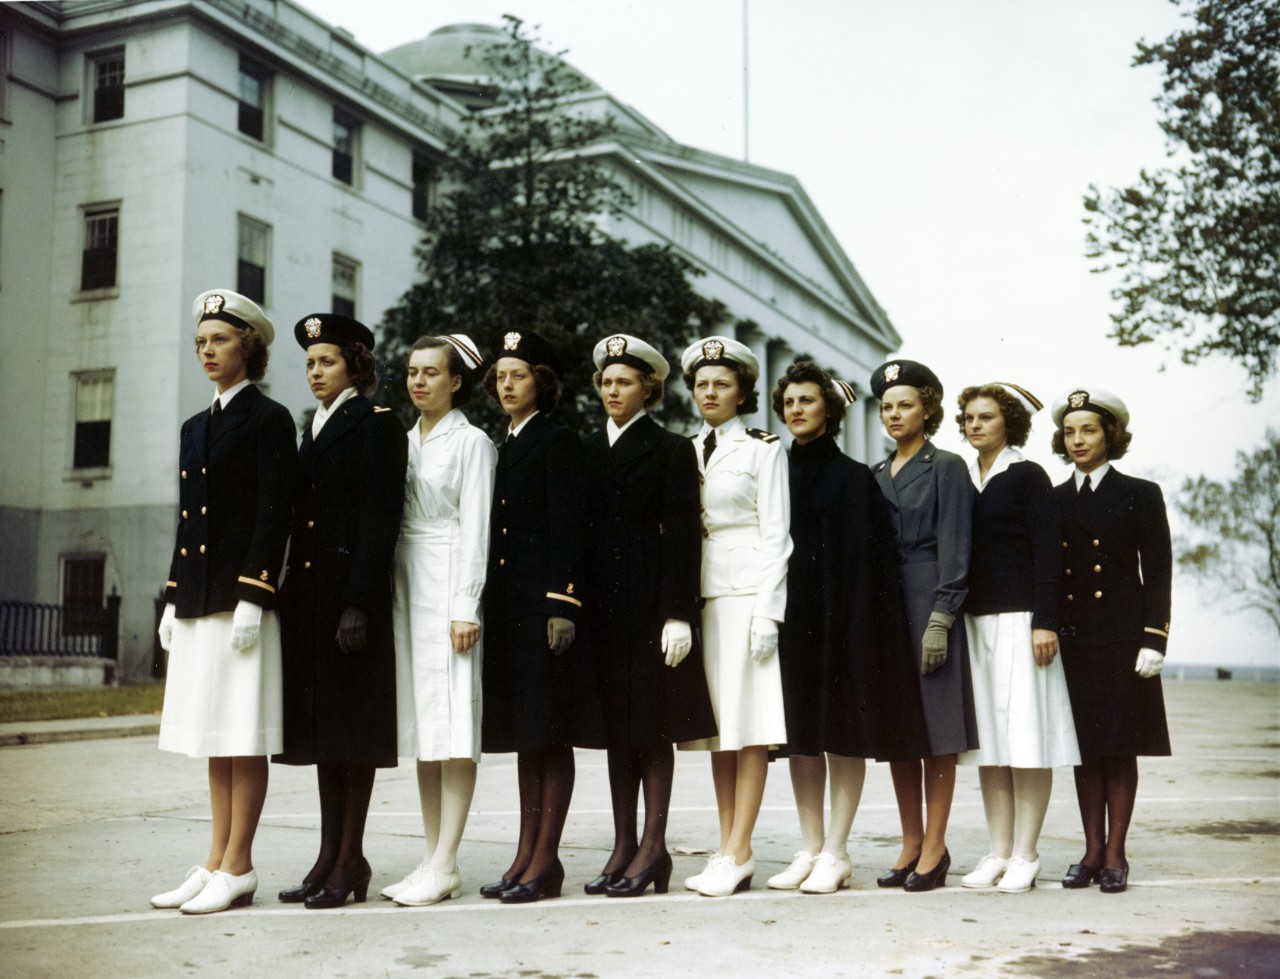 Ten women in ten different Navy uniforms line up horizontally